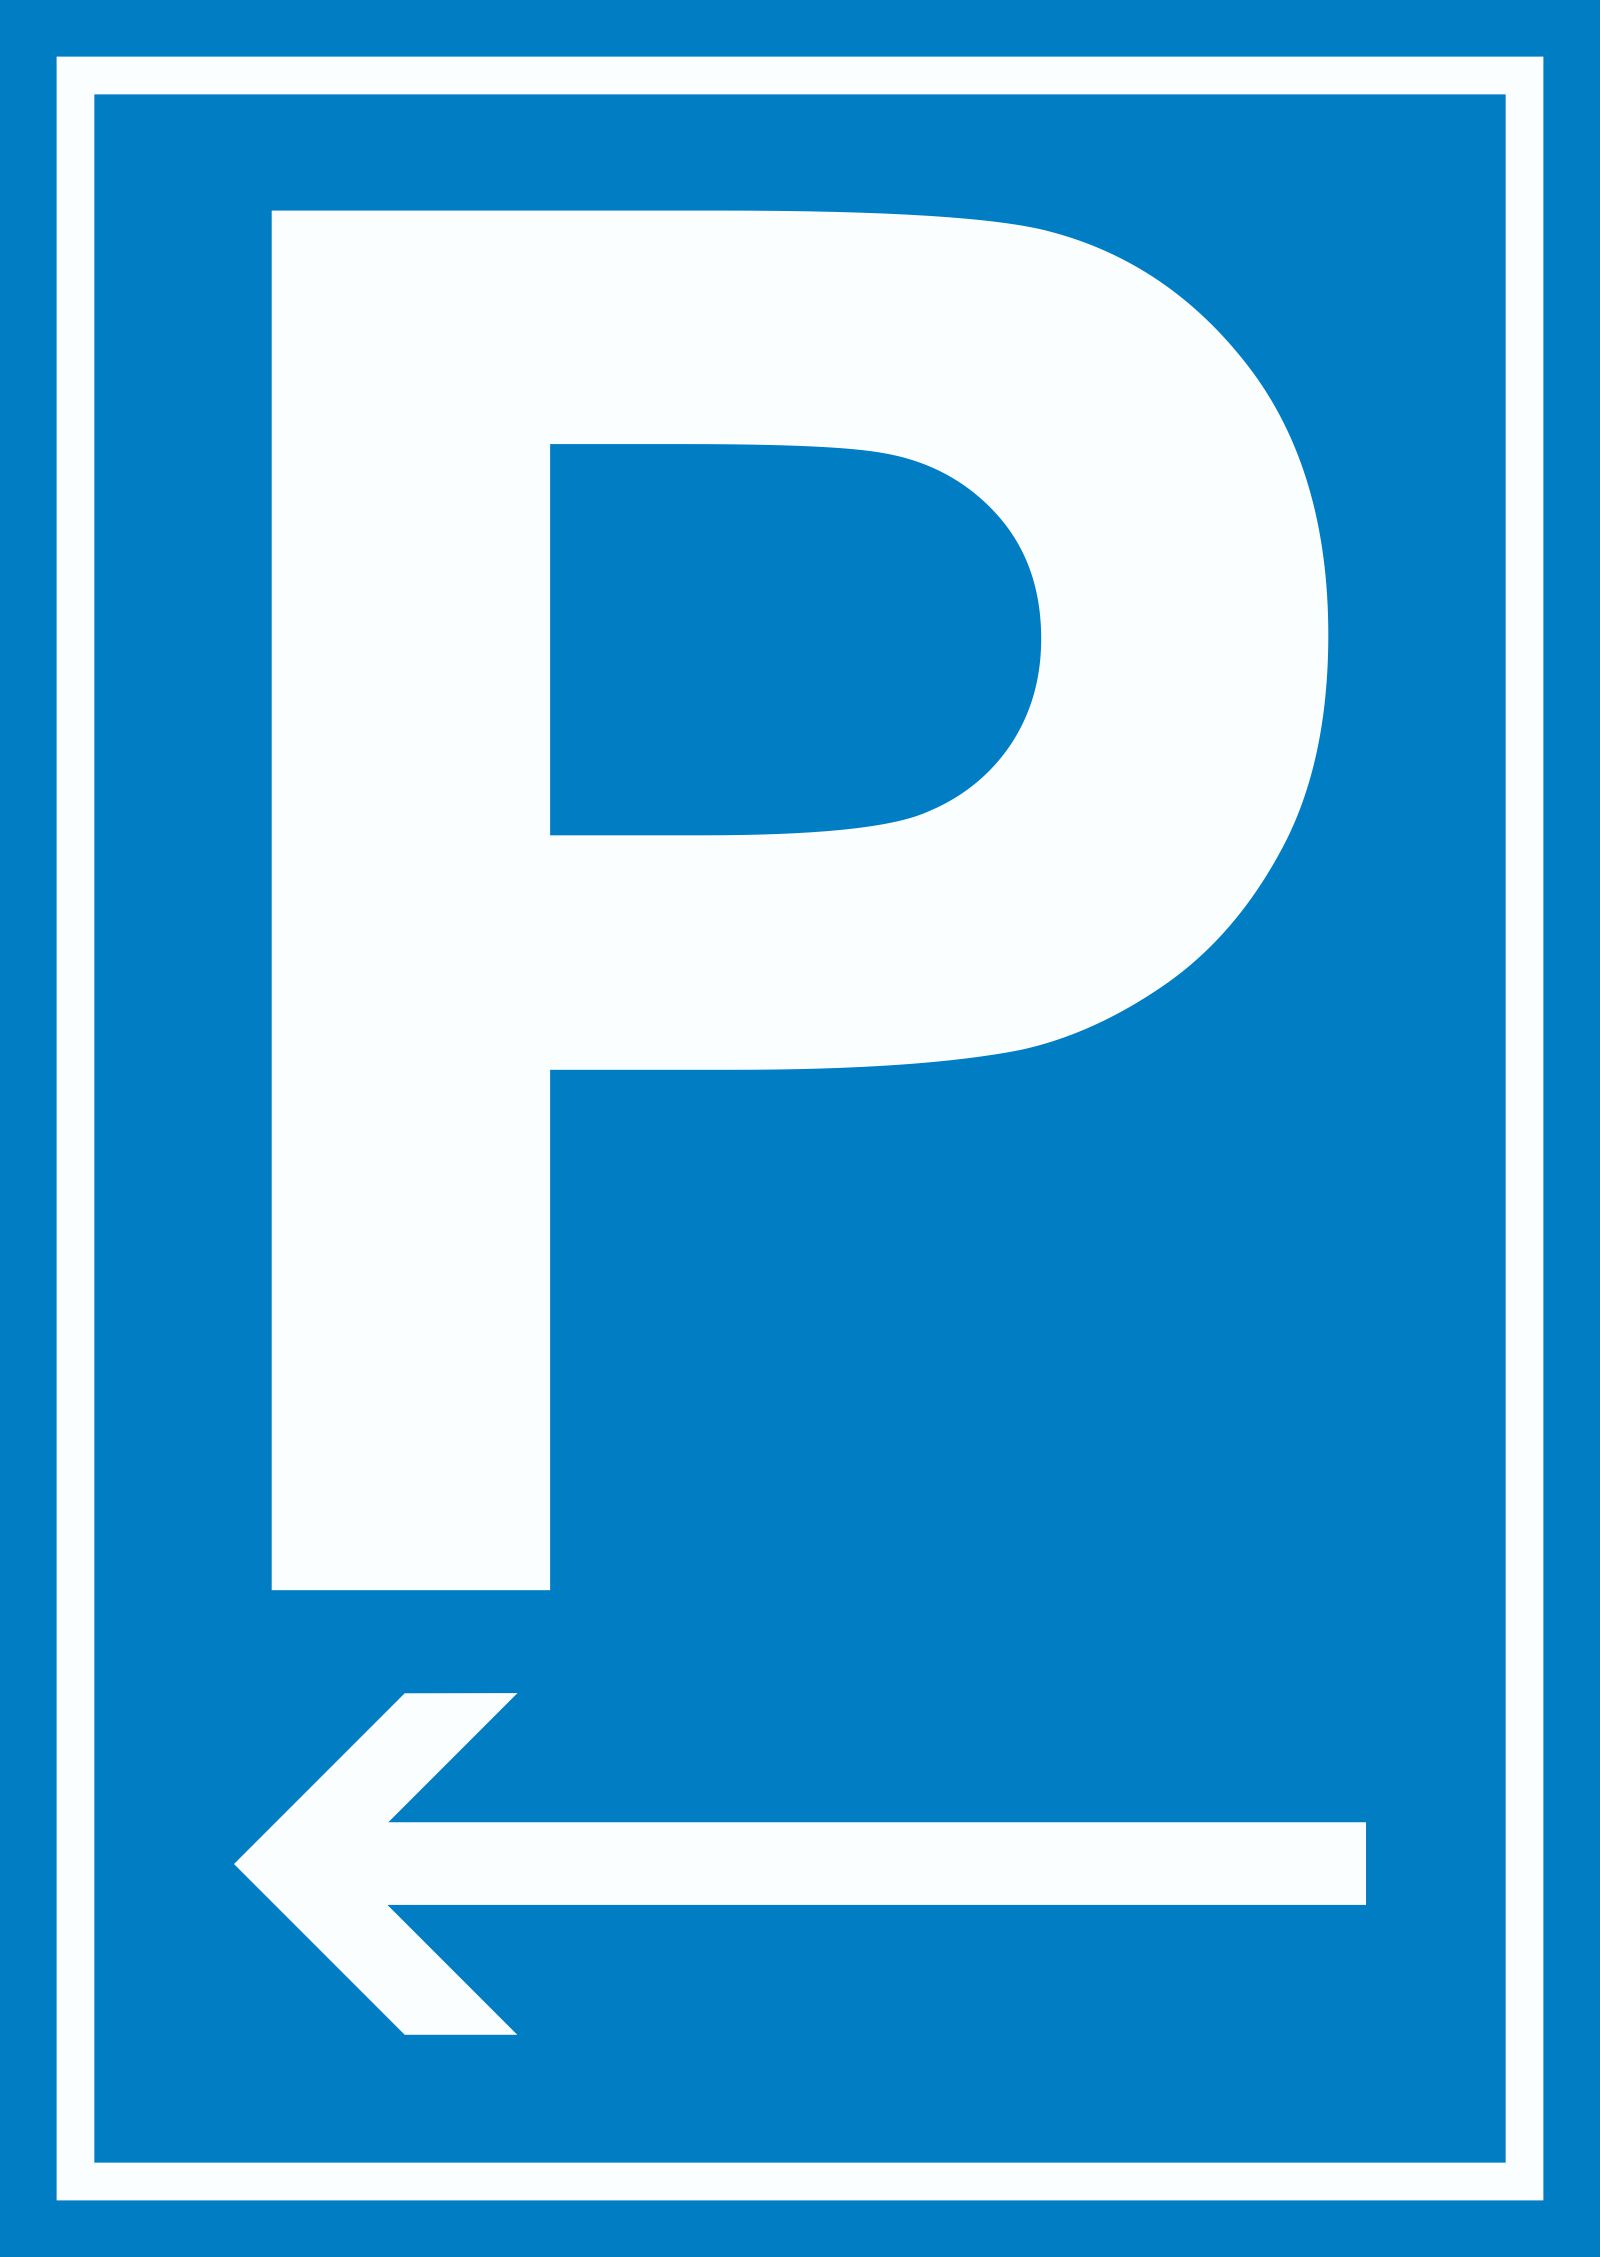 Schild Parkplatz P  Nur für Kunden PVC 25x40cm 41.5126 